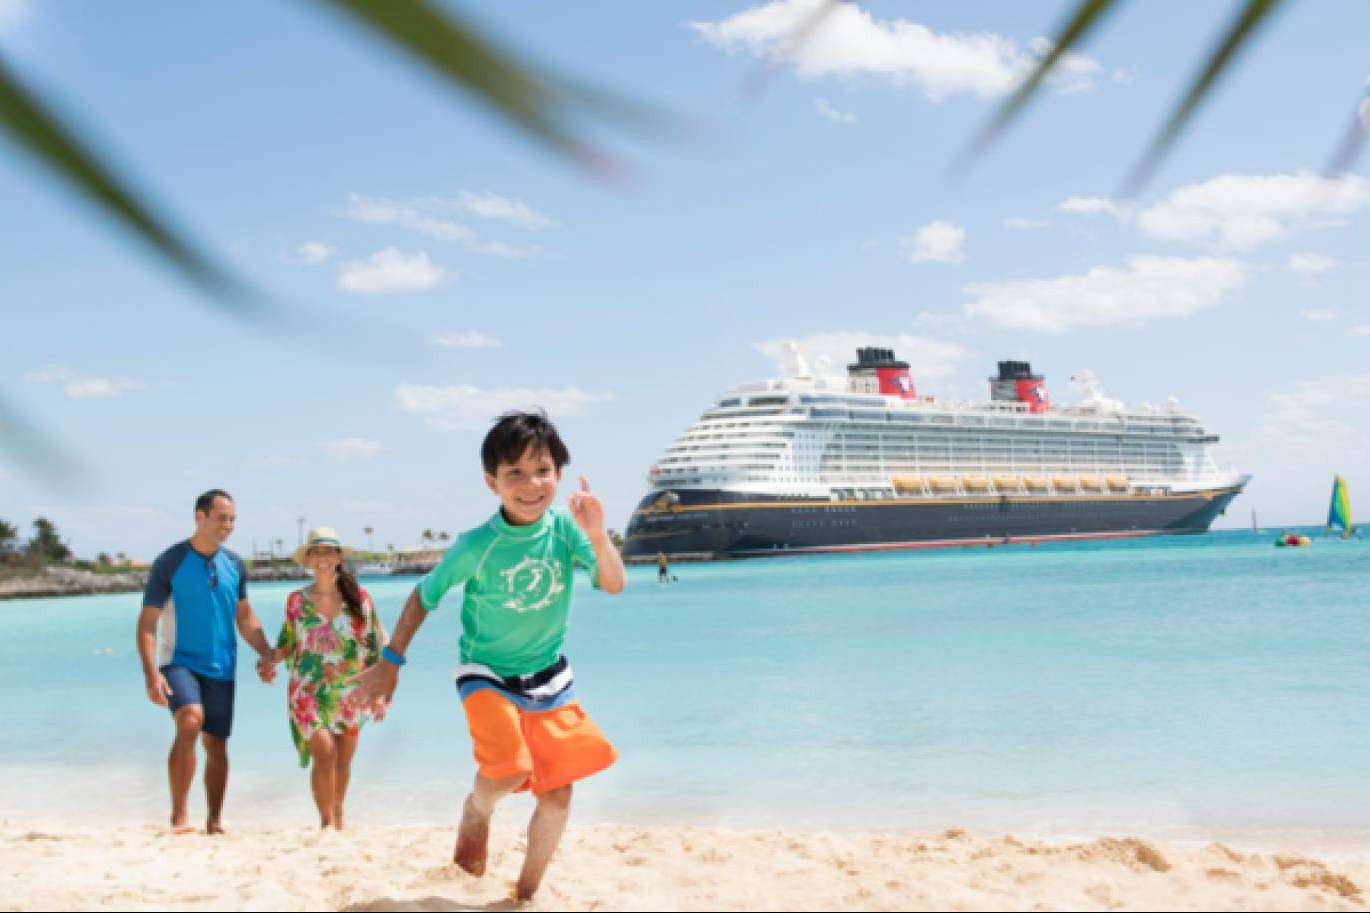  Las mejores vacaciones en familia para este verano, un crucero Disney 